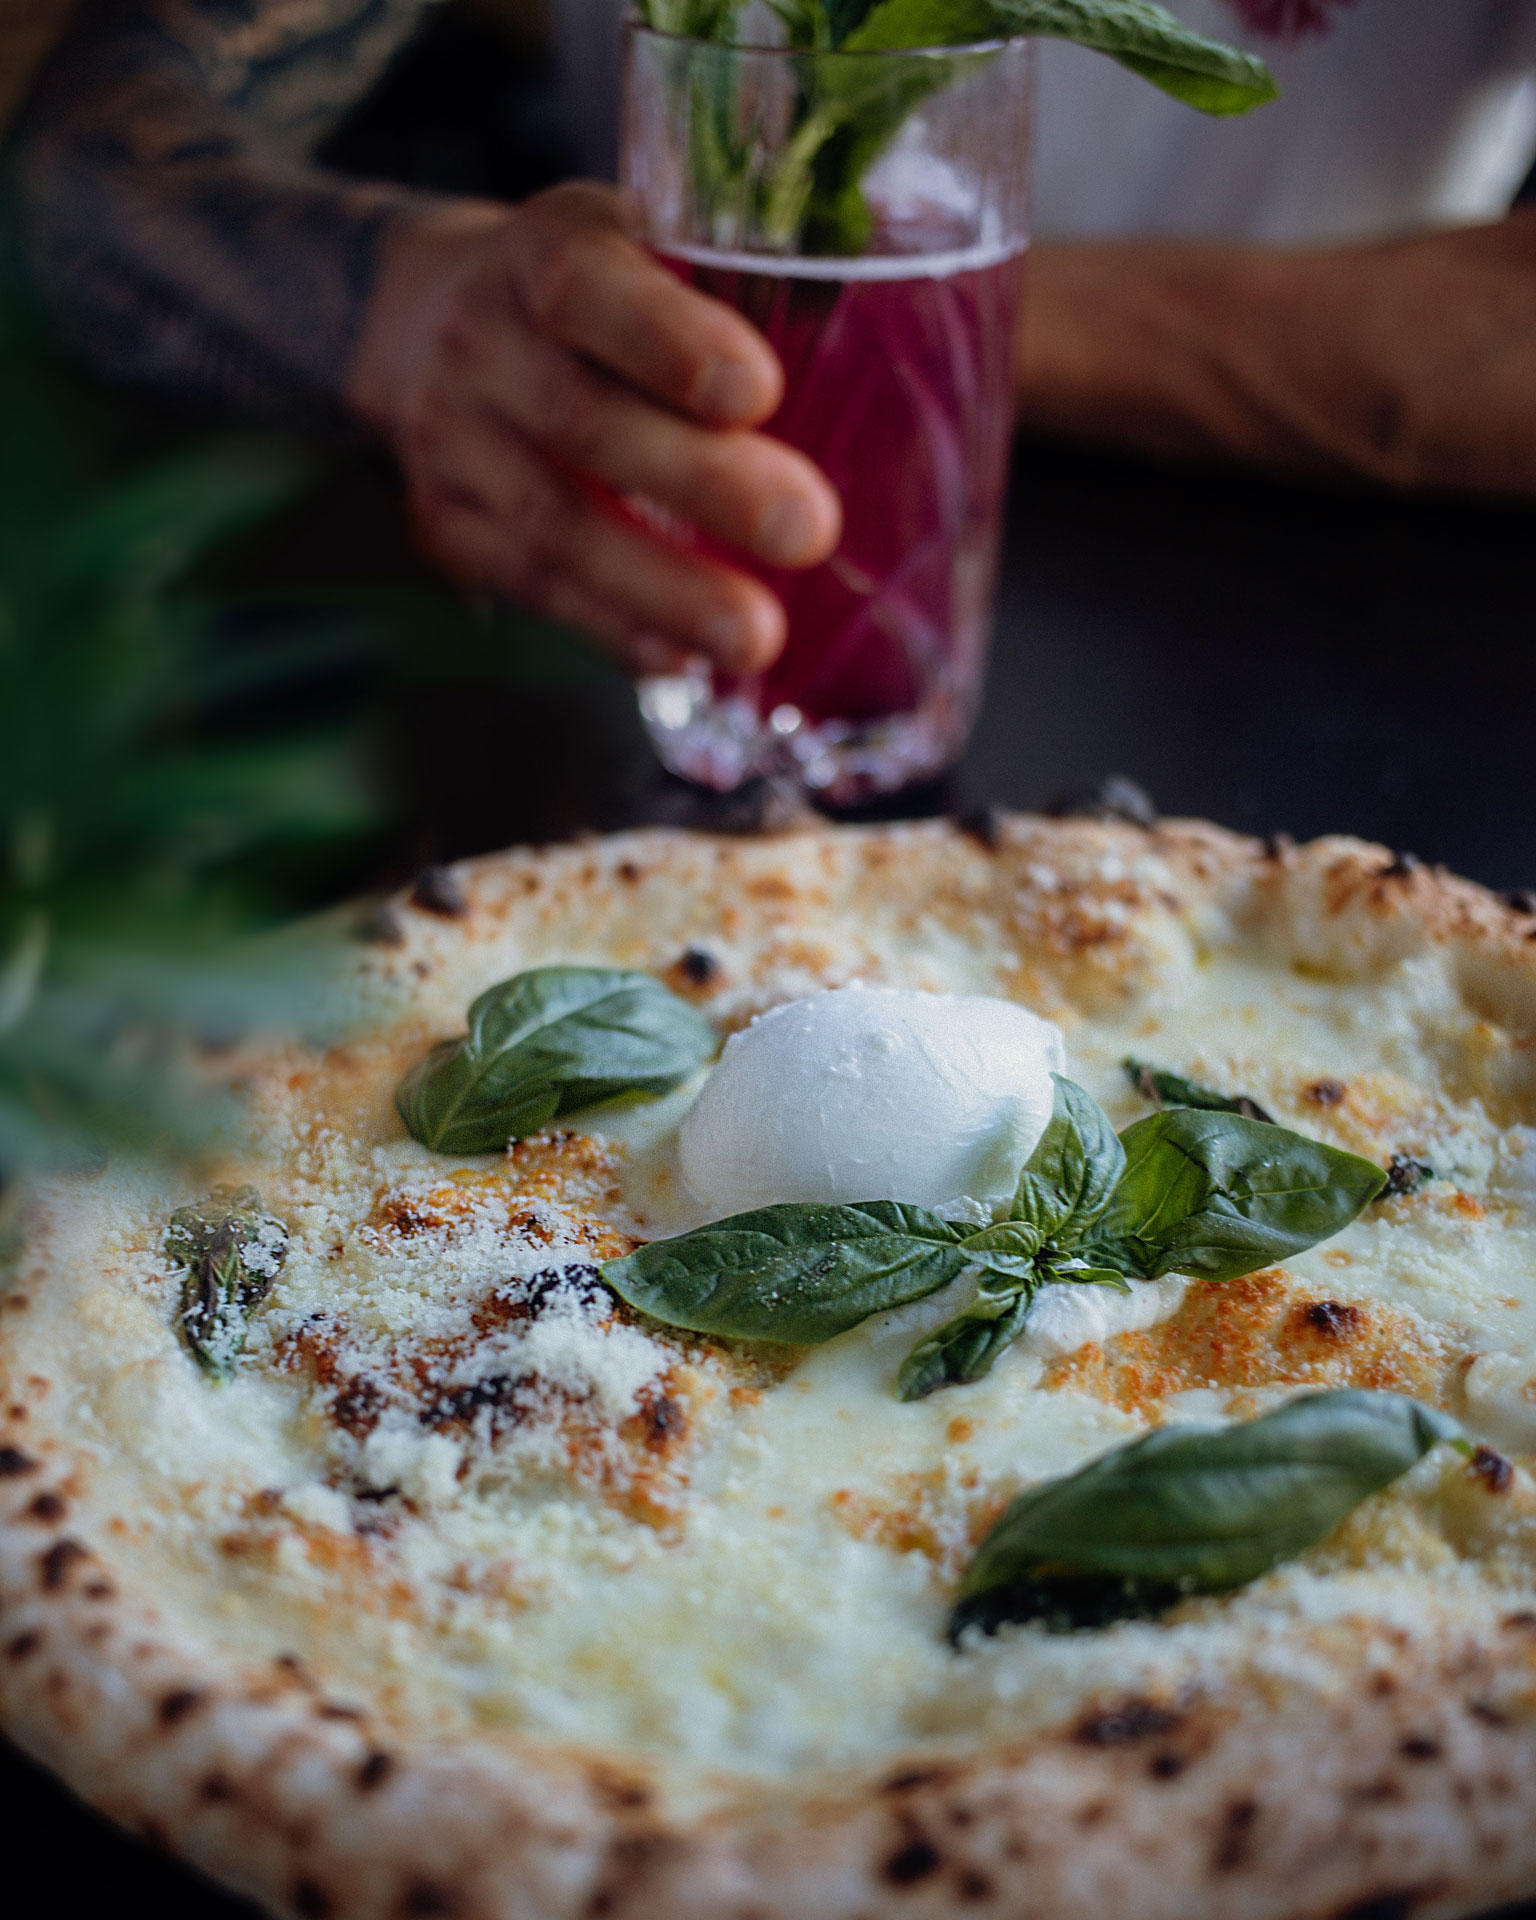 Bilder PEPE in Roma | neapolitan pizza & food & drinks